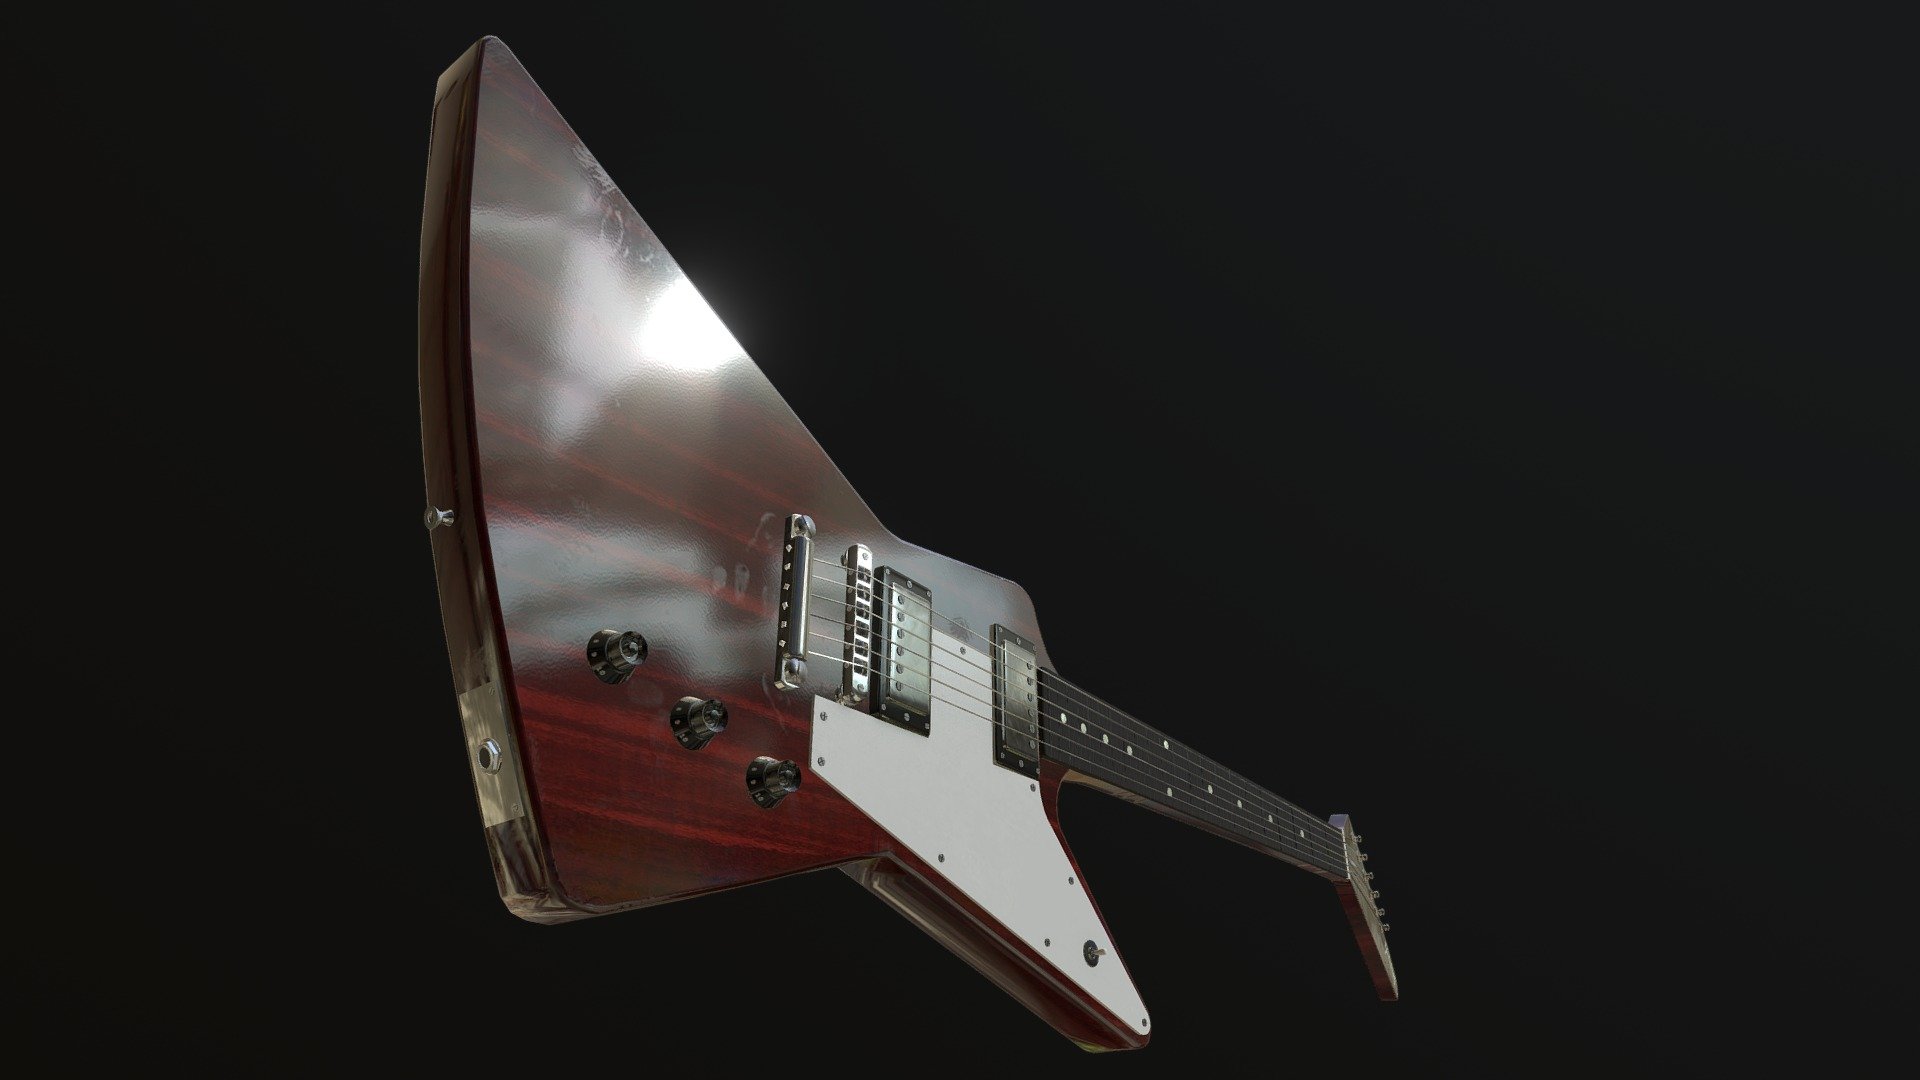 Gibson Explorer inspired model